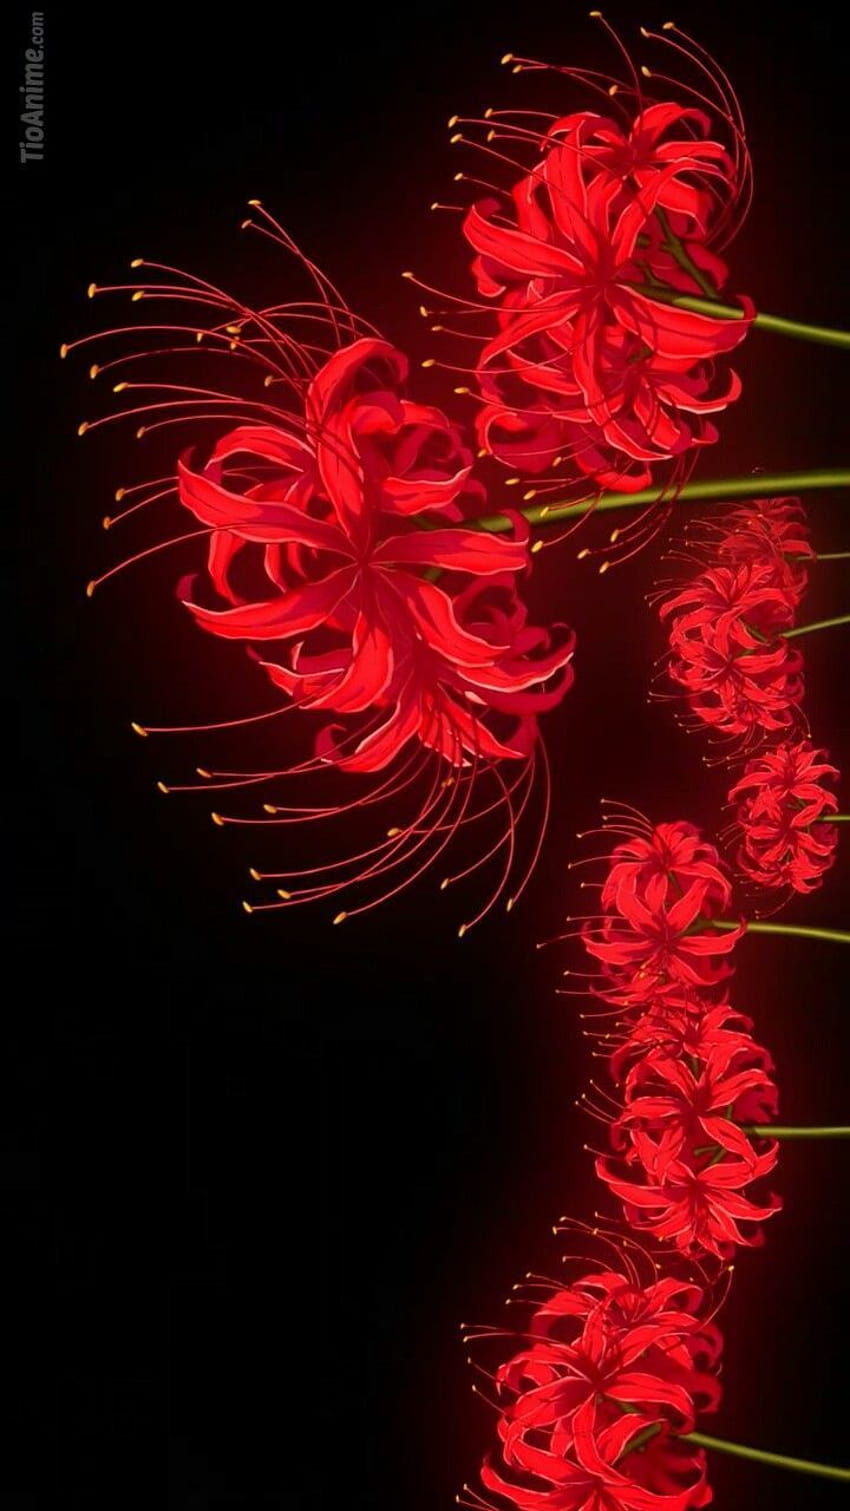 Tg lilia zmartwychwstania pająka, czerwona lilia pająka Tapeta na telefon HD